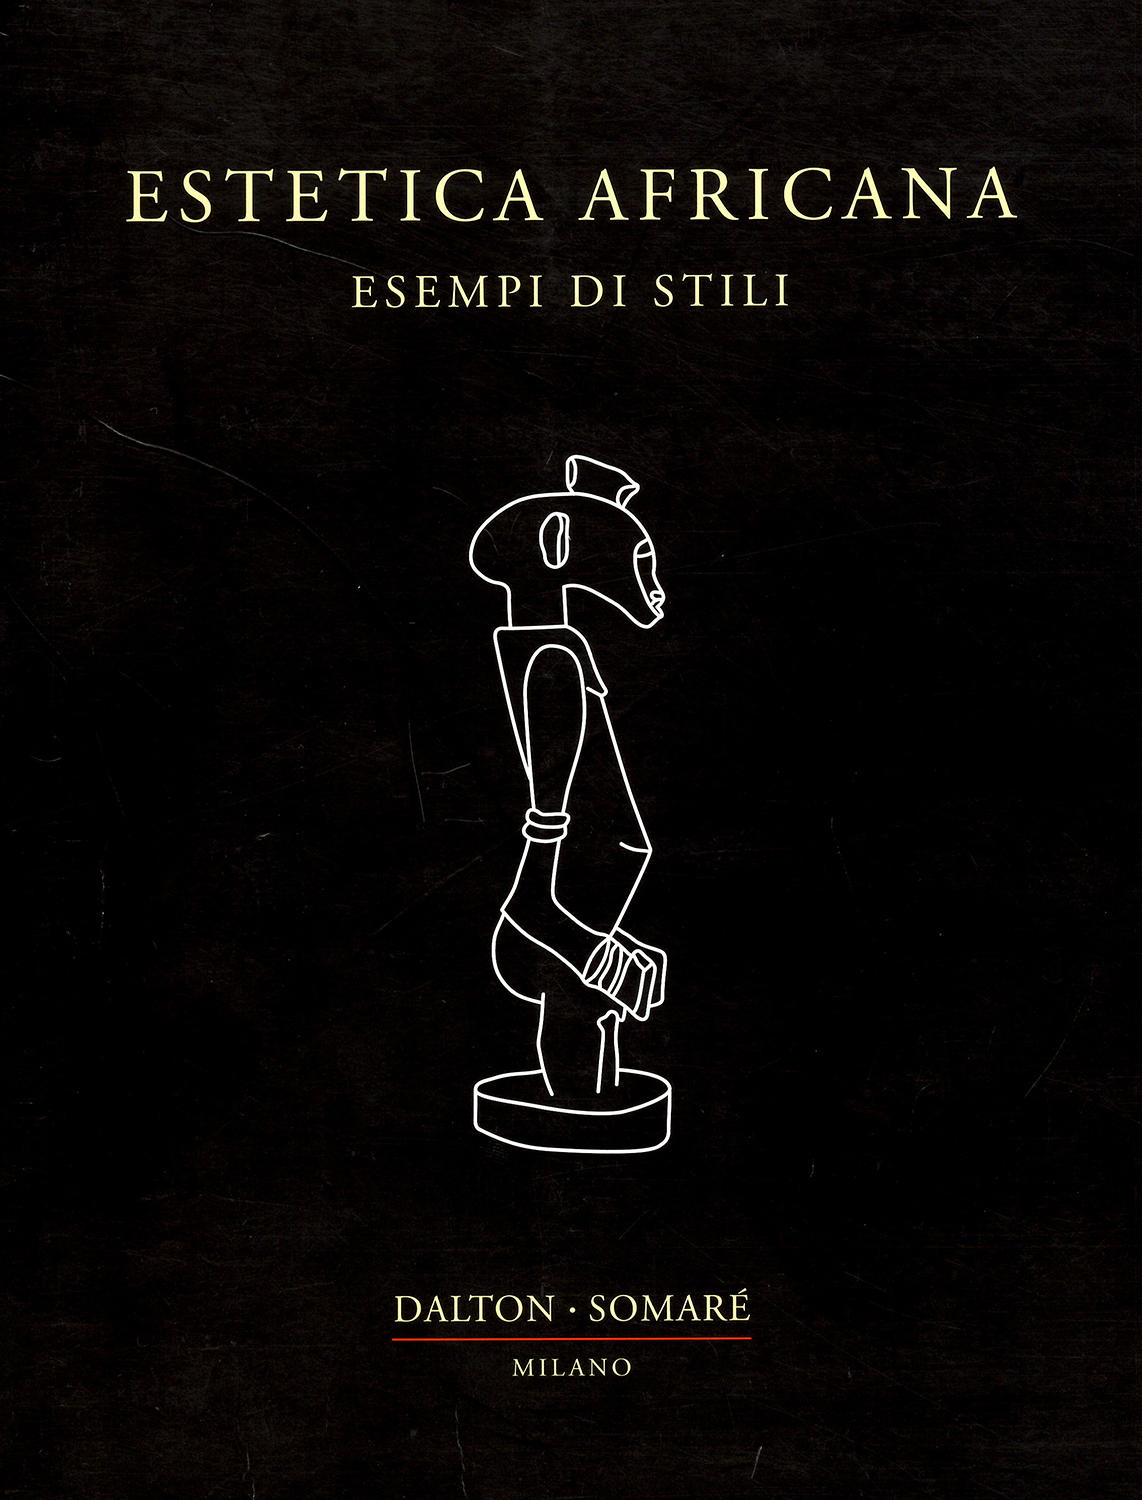 Catalogo Estetica Africana - Esempi di Stili a cura della Galleria Dalton Somaré